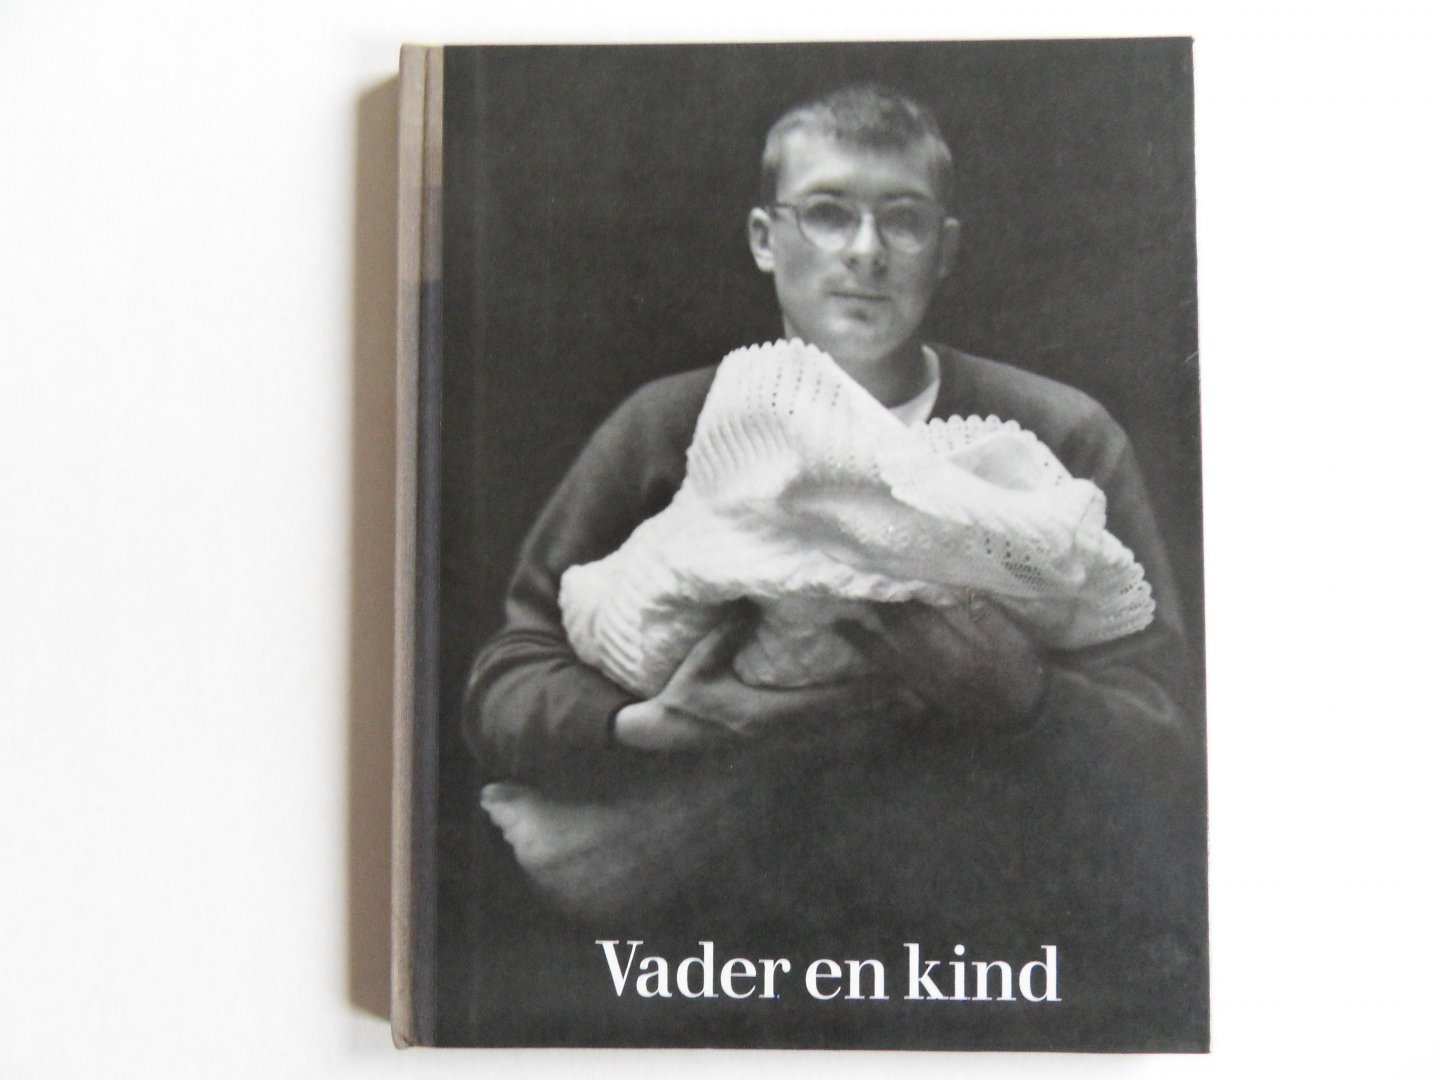 Reich, Hanns (fotografie); Beugel, Ina van der (tekst) - Vader en kind. - Een [Prachtig] NBC-fotoboek.